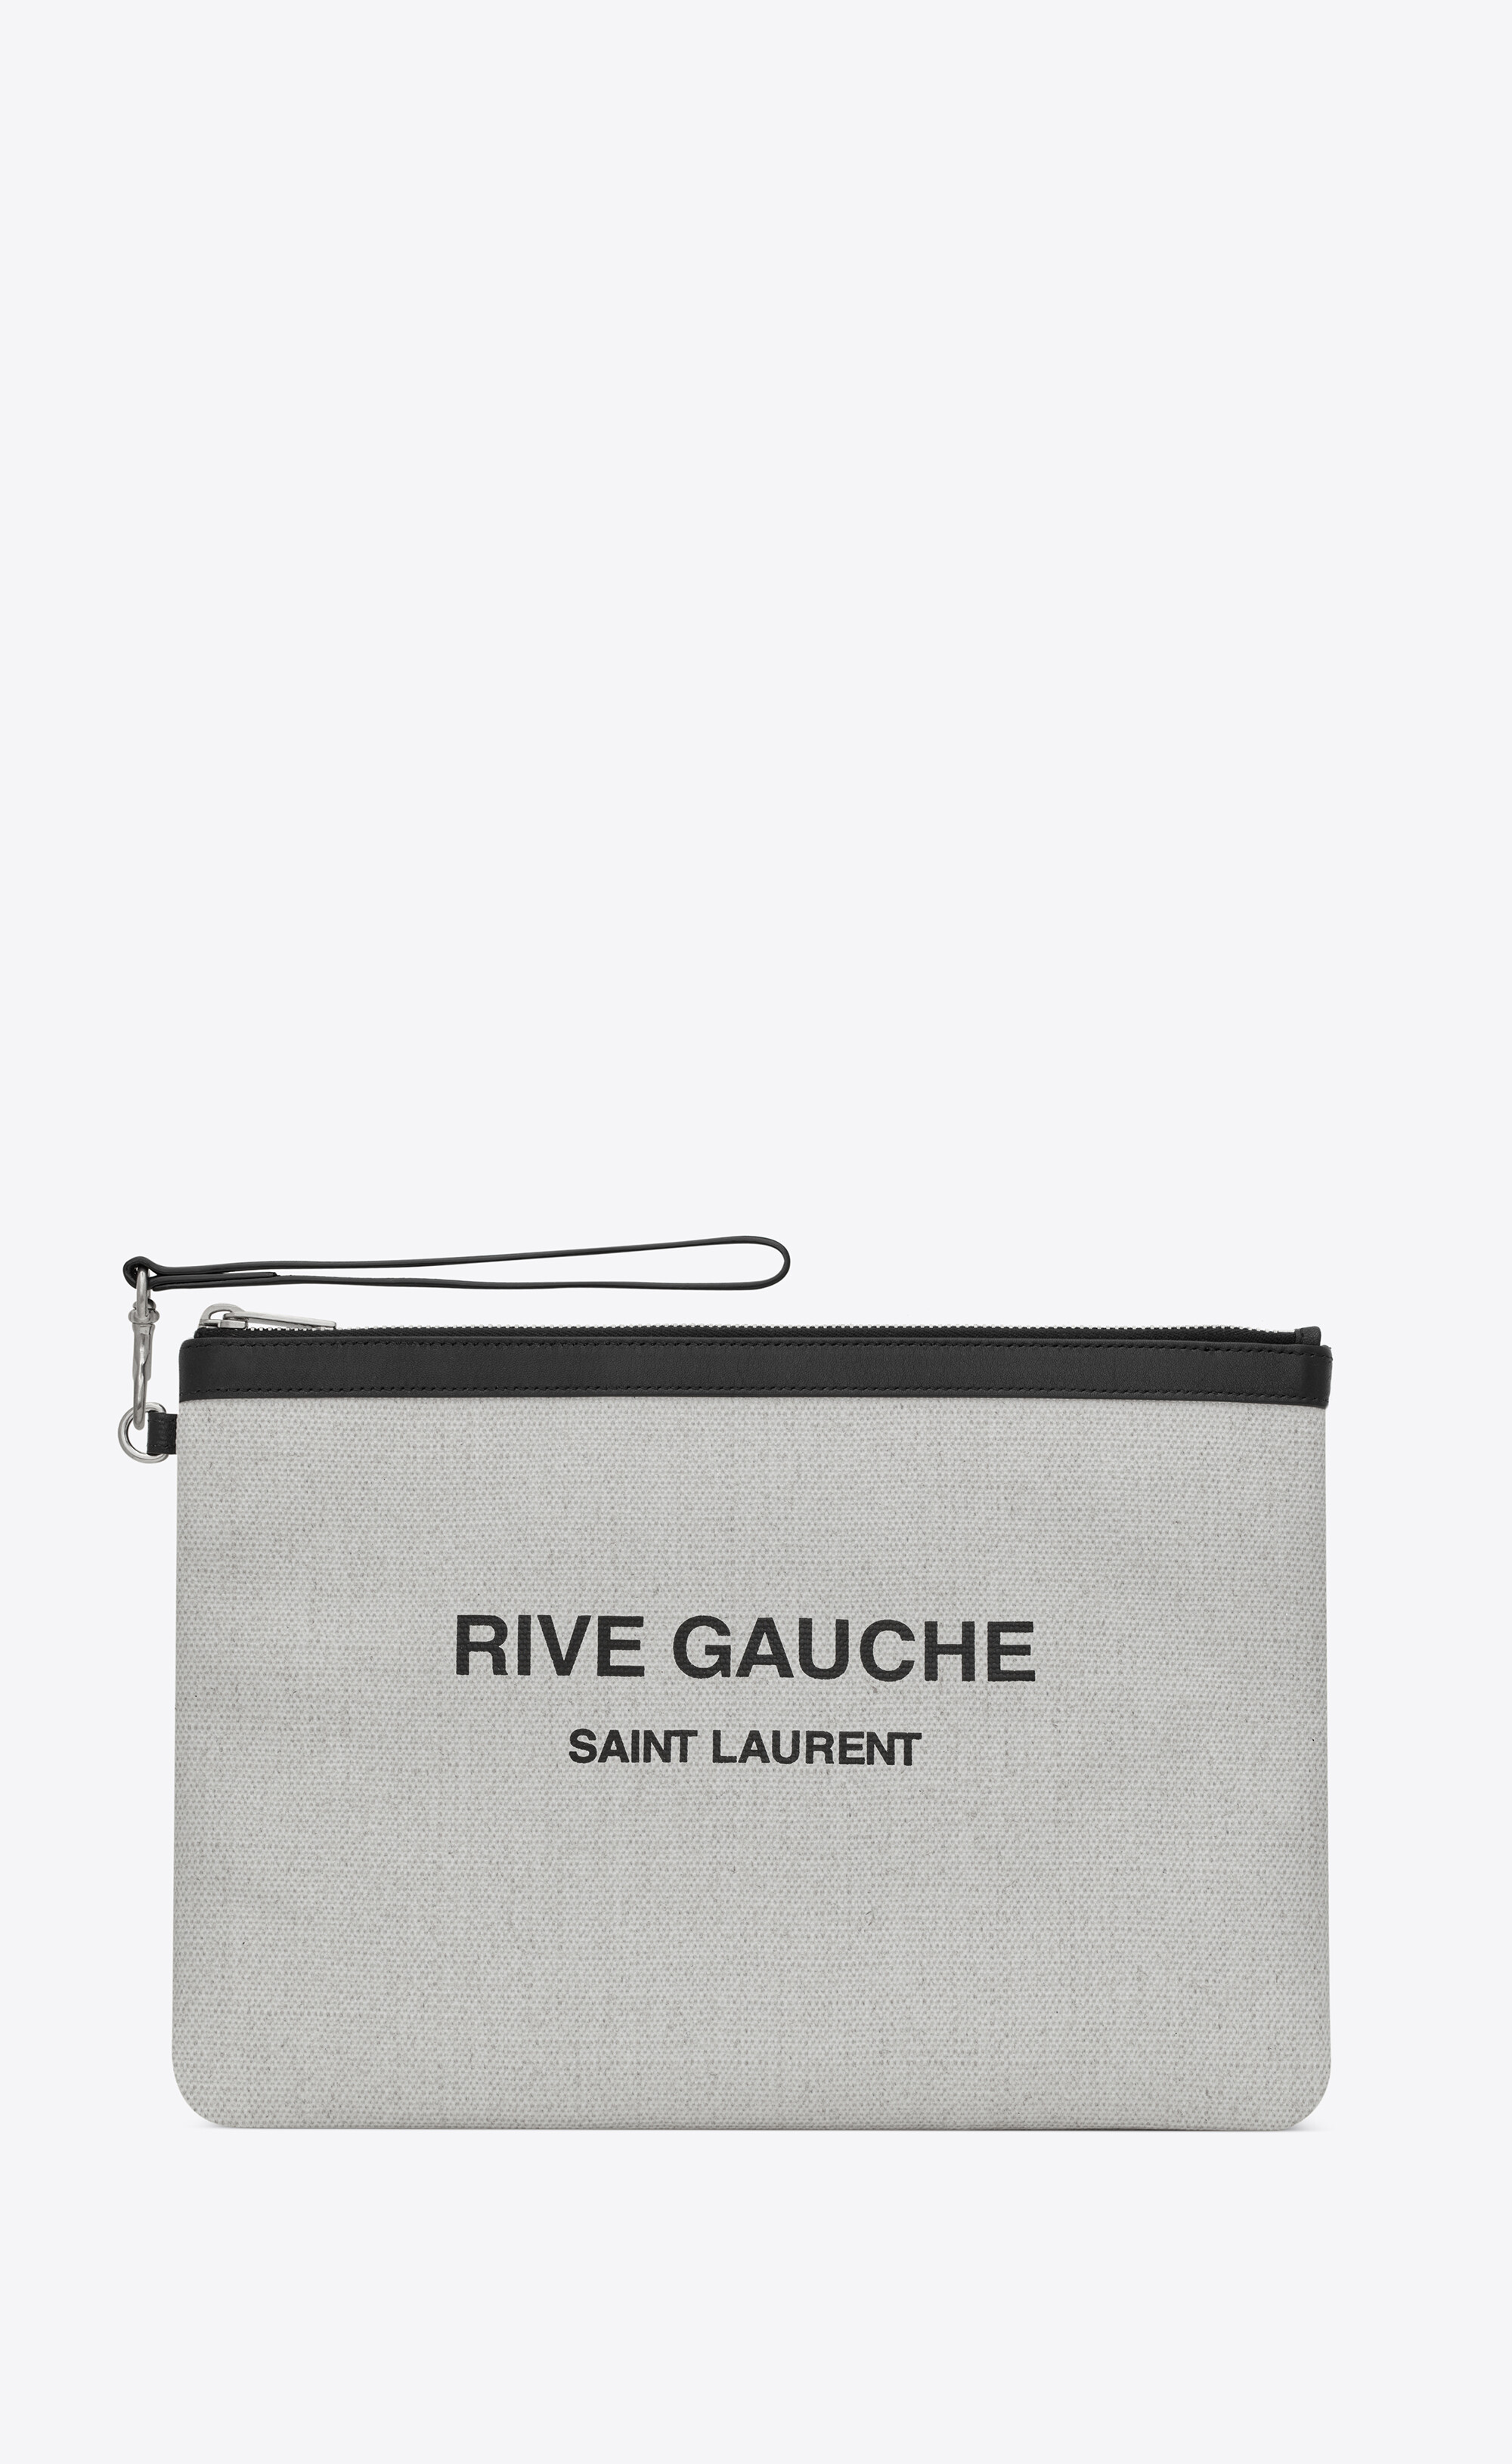 Saint Laurent Rive Gauche Linen & … curated on LTK